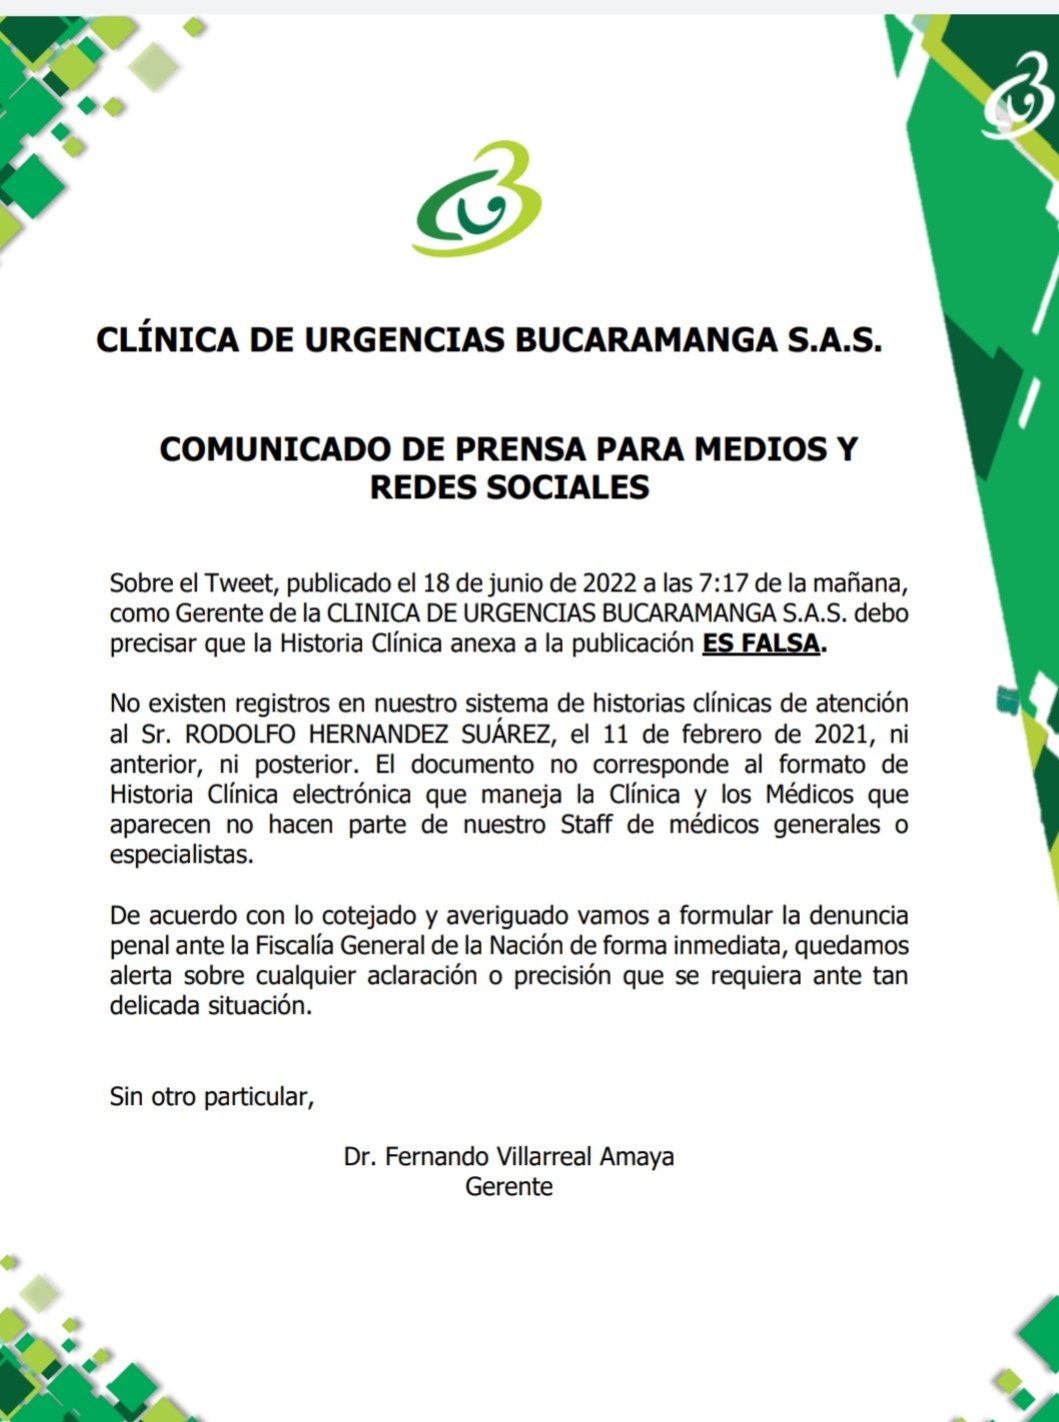 Comunicado oficial Clínica de Urgencias de Bucaramanga / Redes sociales 